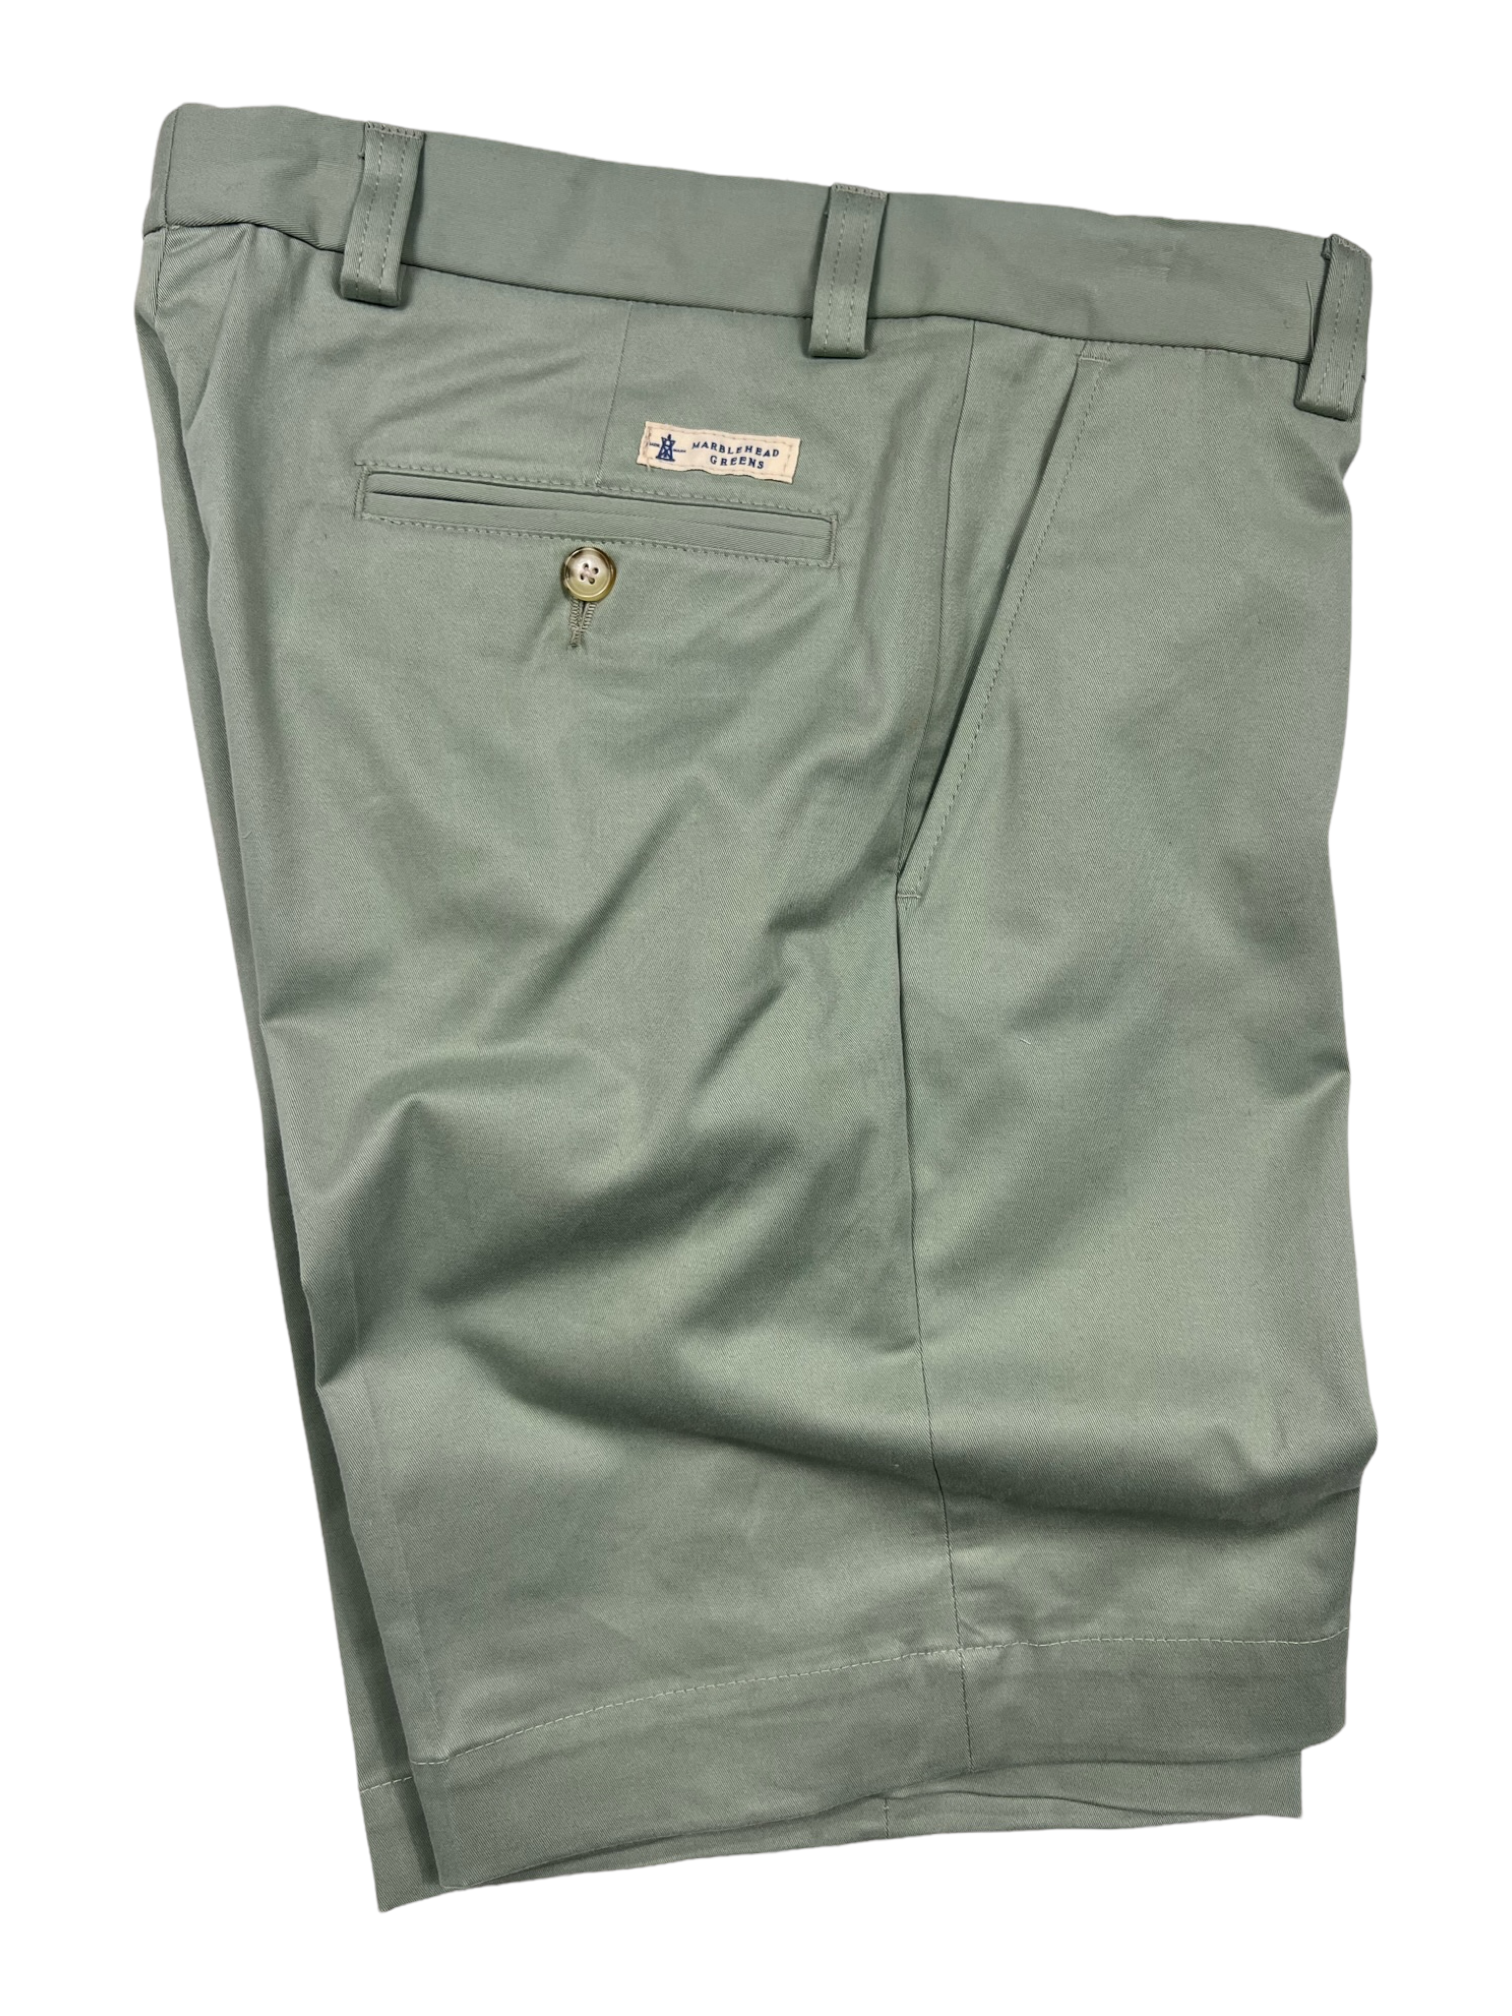 Shanty Shorts - Marblehead Green